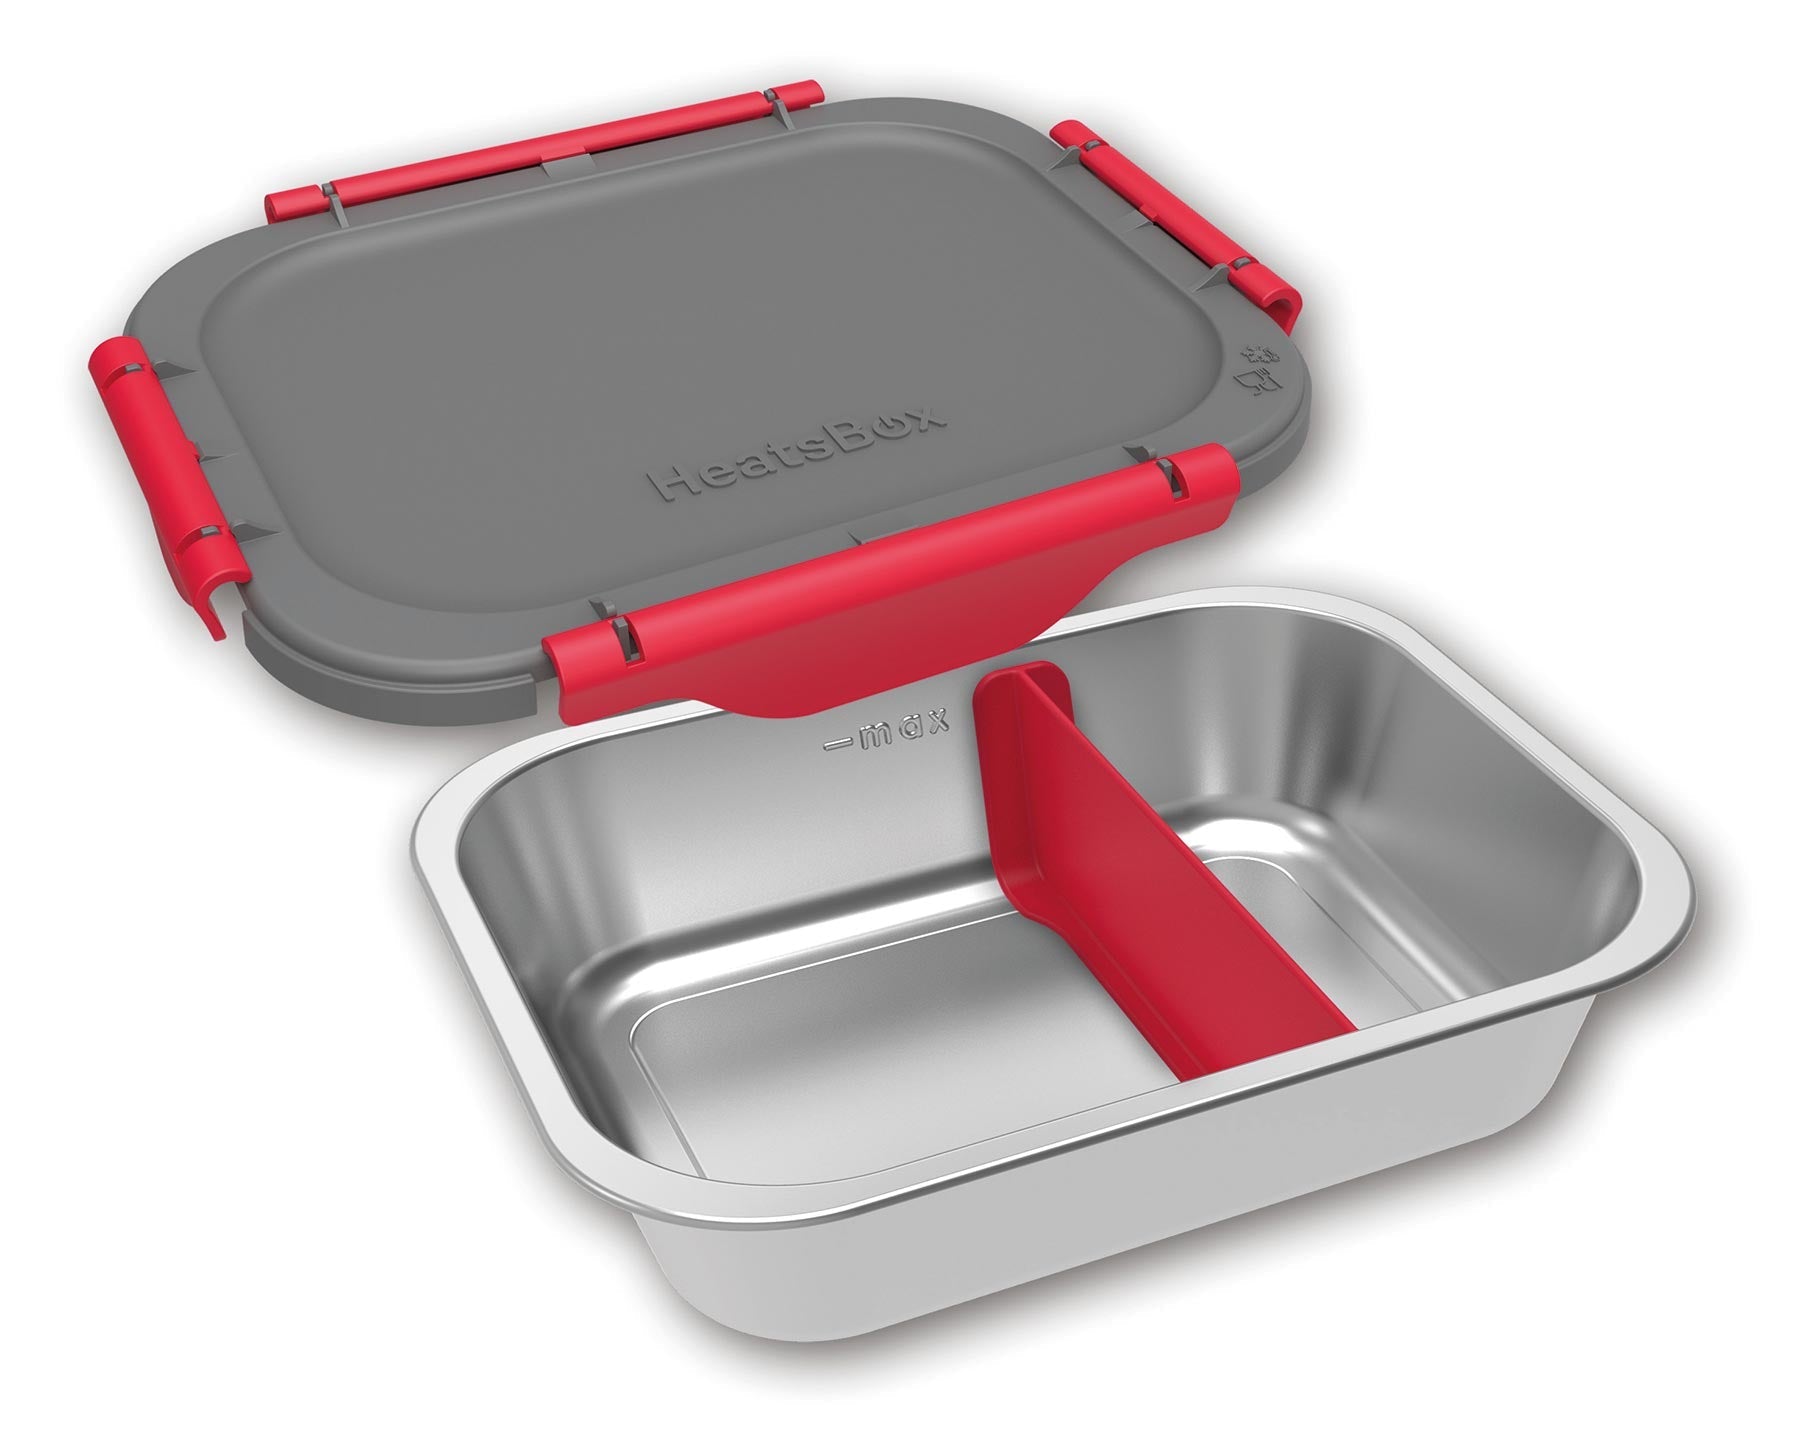 KOENIG HeatsBox Style, die heizbare Lunchbox für unterwegs